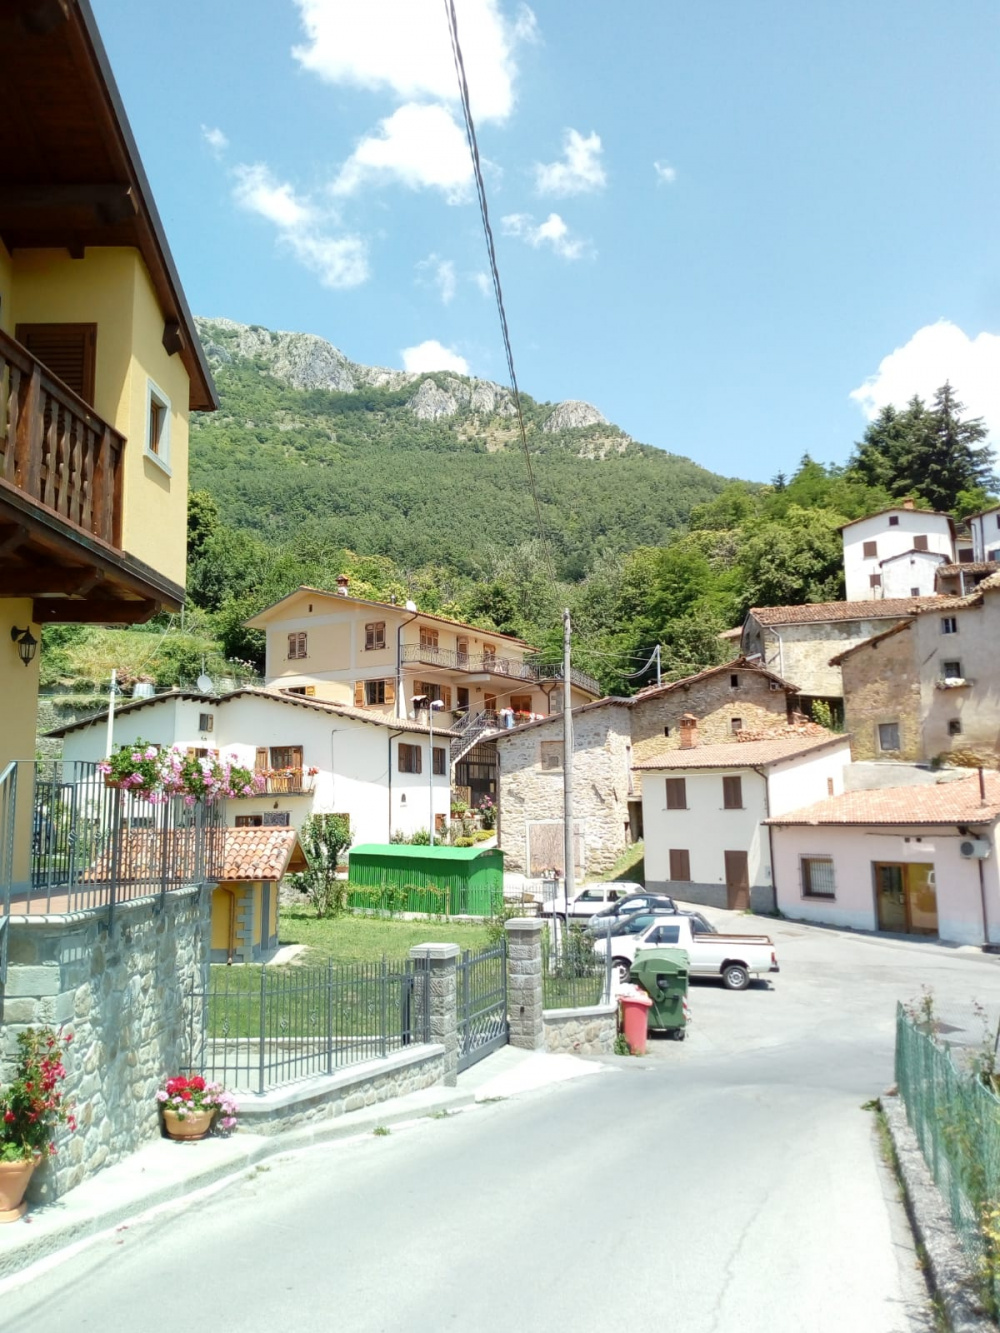 Appartamento ristrutturato in vendita zona Garfagnagna Lucca località Corfino